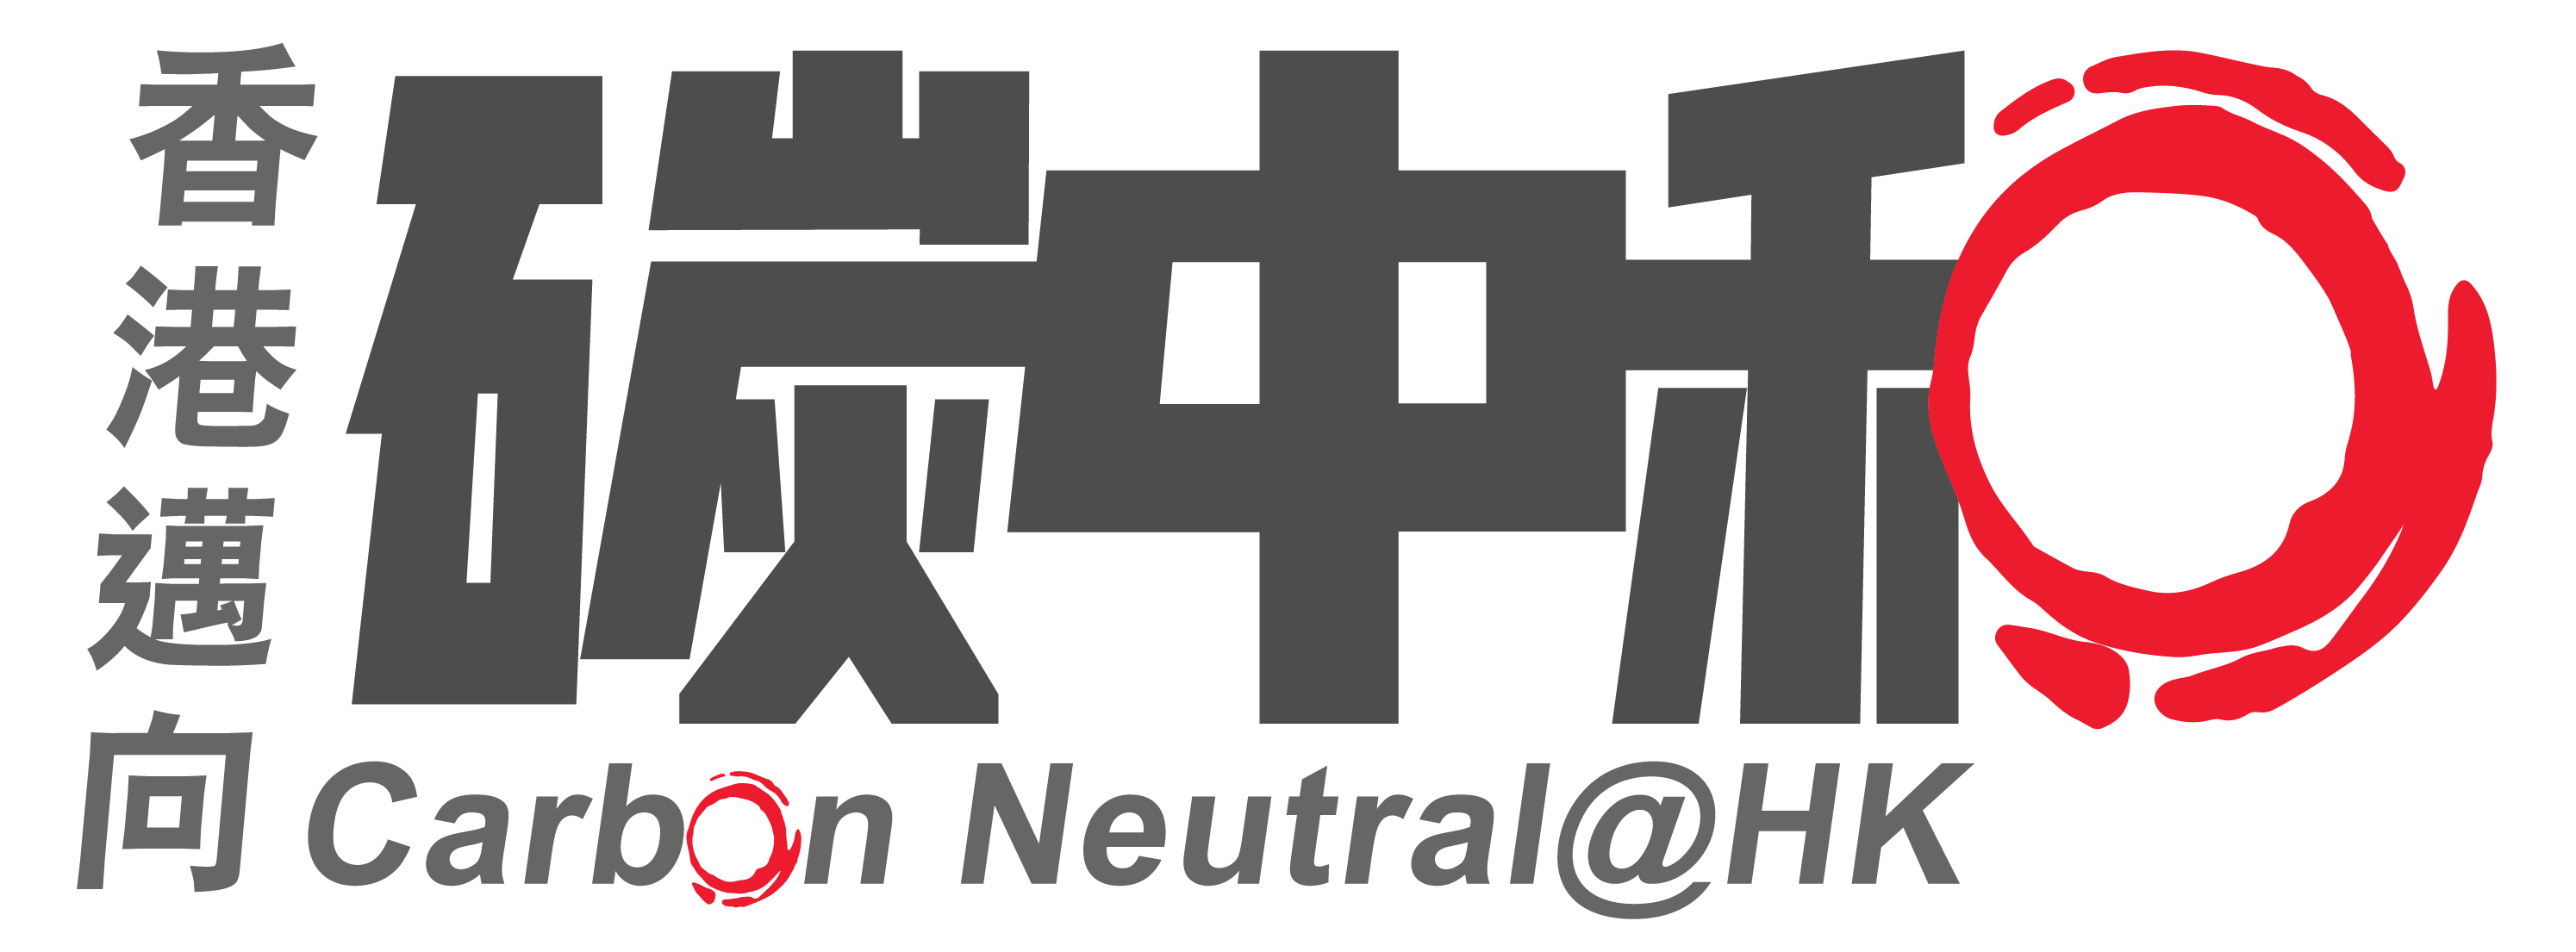 Carbon Neutral@HK